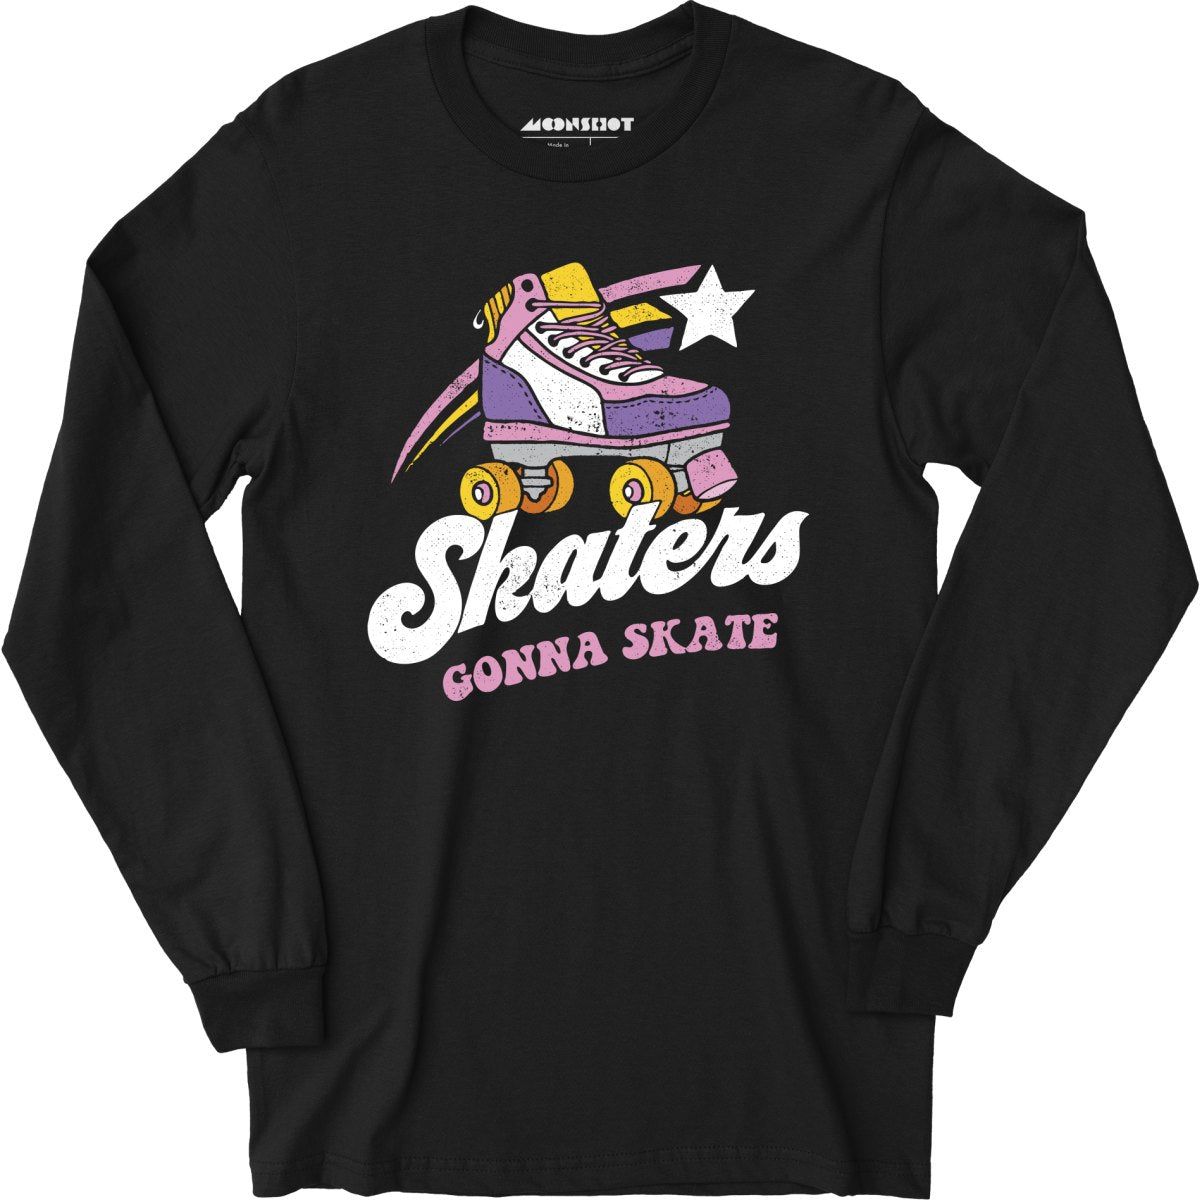 Skaters Gonna Skate - Long Sleeve T-Shirt